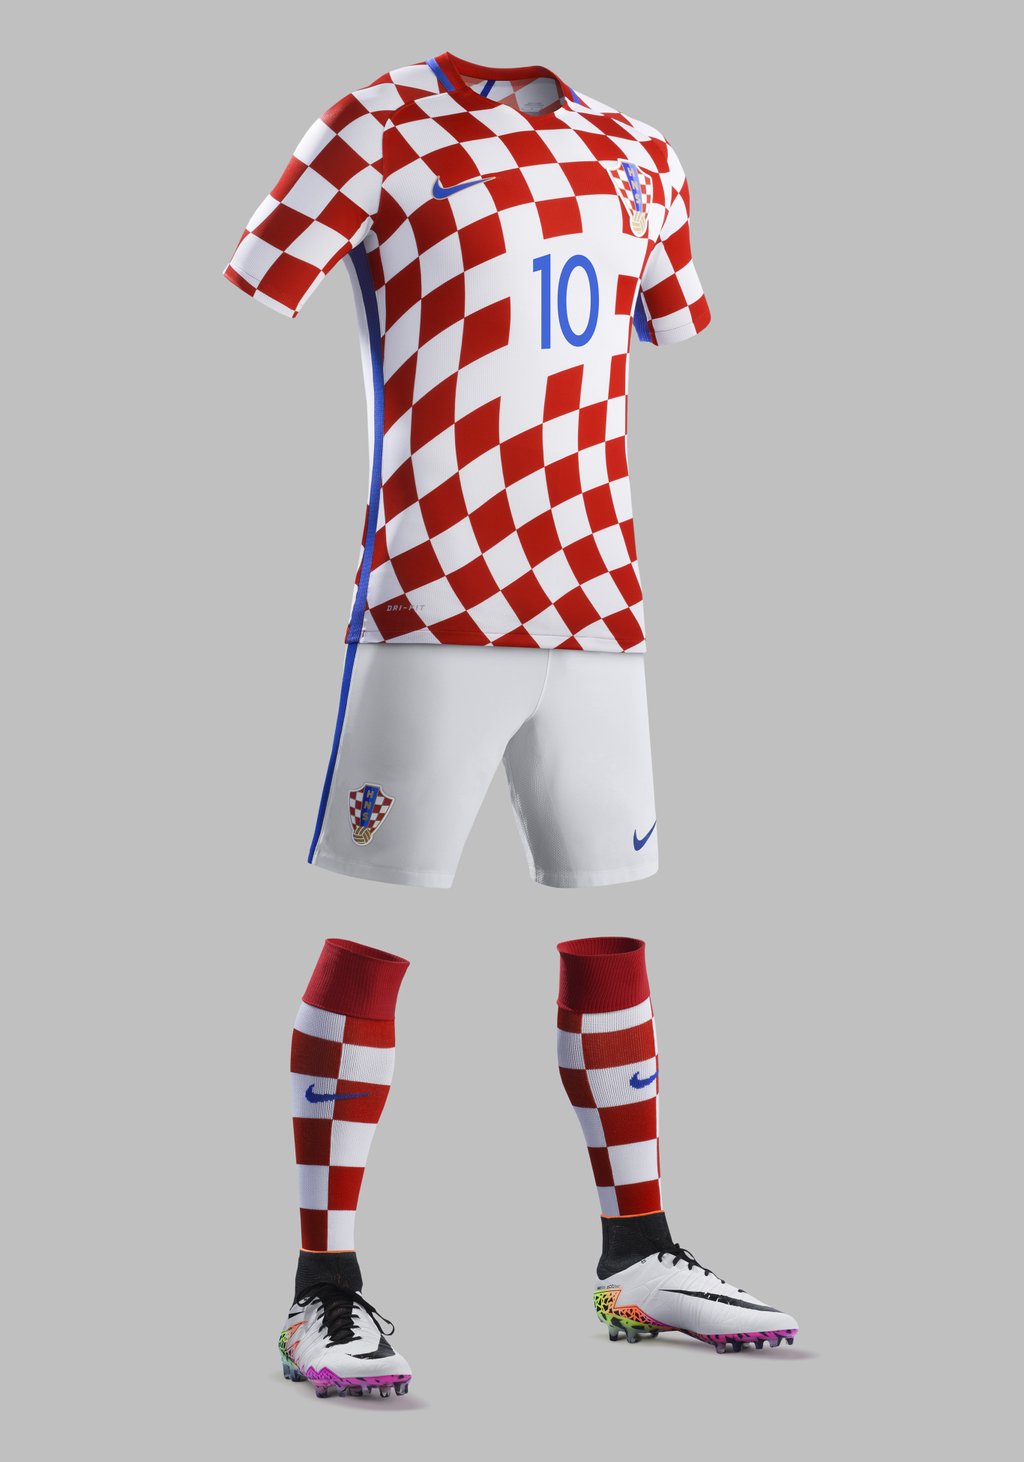 Nike hat die neuen Trikots der kroatischen Fußball-Nationalmannschaft vorgestellt. Wieder diente das Schachmuster des kroatischen Wappens als zentrales Design-Element. Die groß-weißen Quadrate sind seit über 500 Jahren das nationale Symbol der Kroaten und repräsentieren Frieden, Mut und Kraft.